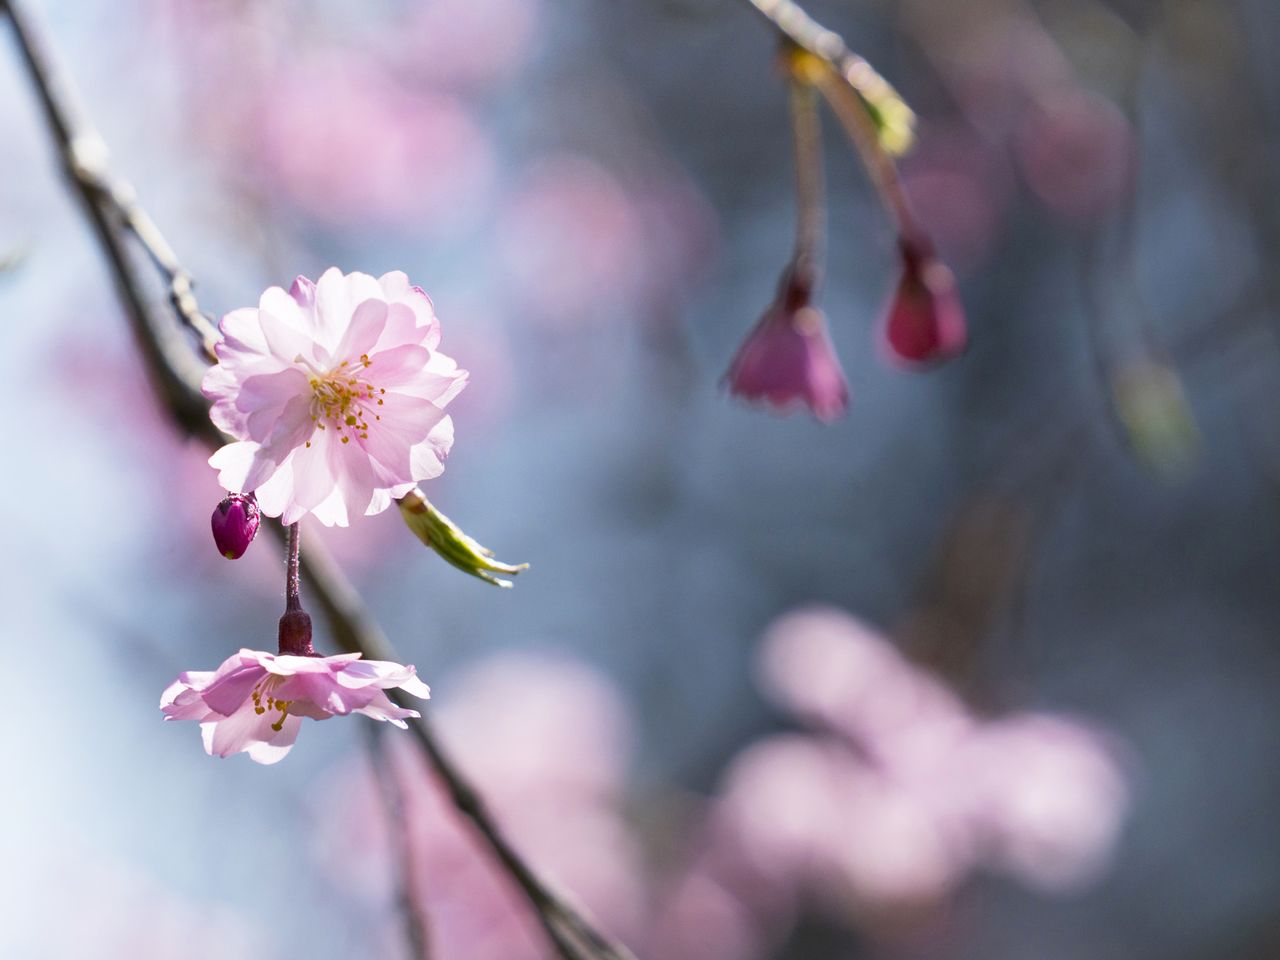 平安神宫的八重红枝垂樱。这里另种有染井吉野等樱花，赏樱佳期为4月上旬到中旬